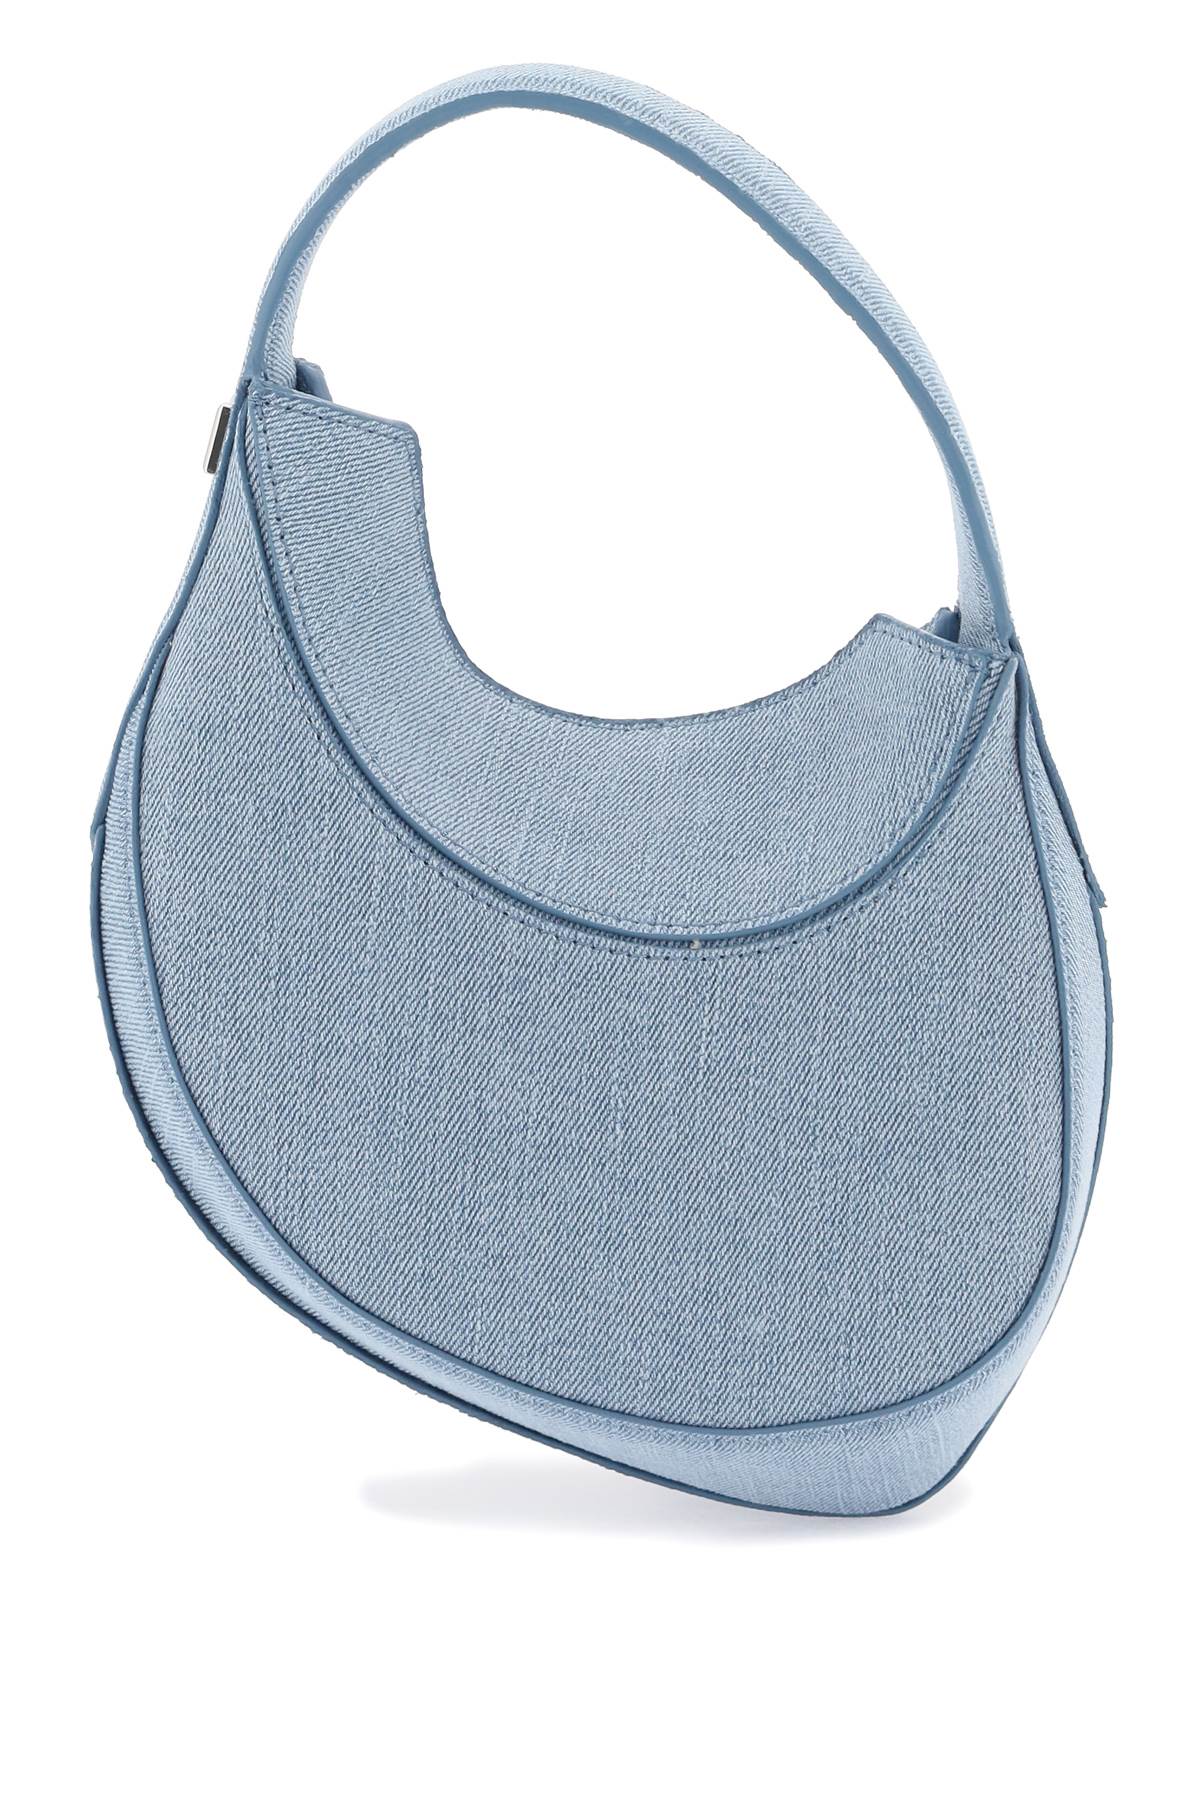 MUGLER Spiral Denim Mini Handbag in Light Blue with Leather Pocket